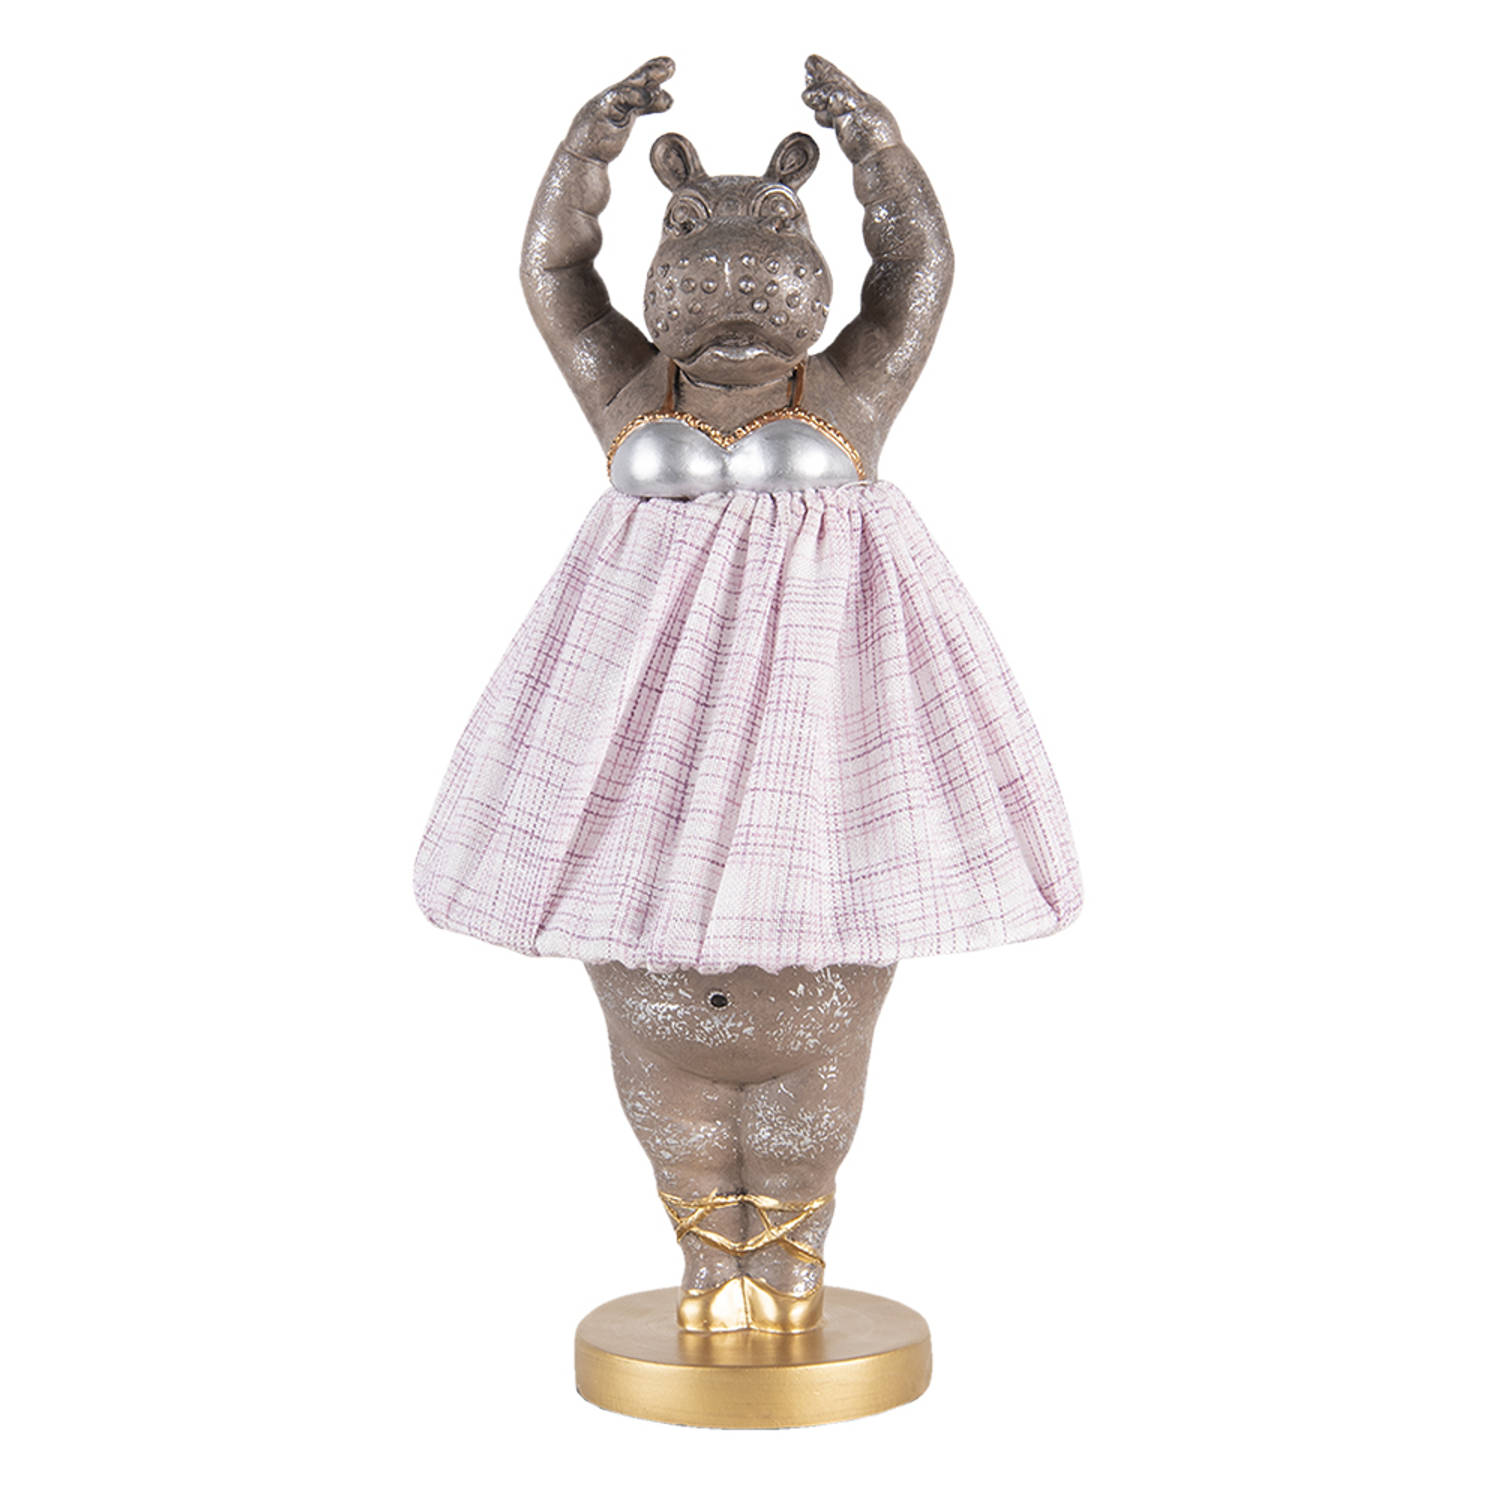 HAES DECO - Tafellamp - City Jungle - Ballerina Nijlpaard, formaat Ø 20x41 cm - Goudkleurig met Roze Lampenkap - Bureaulamp, Sfeerlamp, Nachtlampje